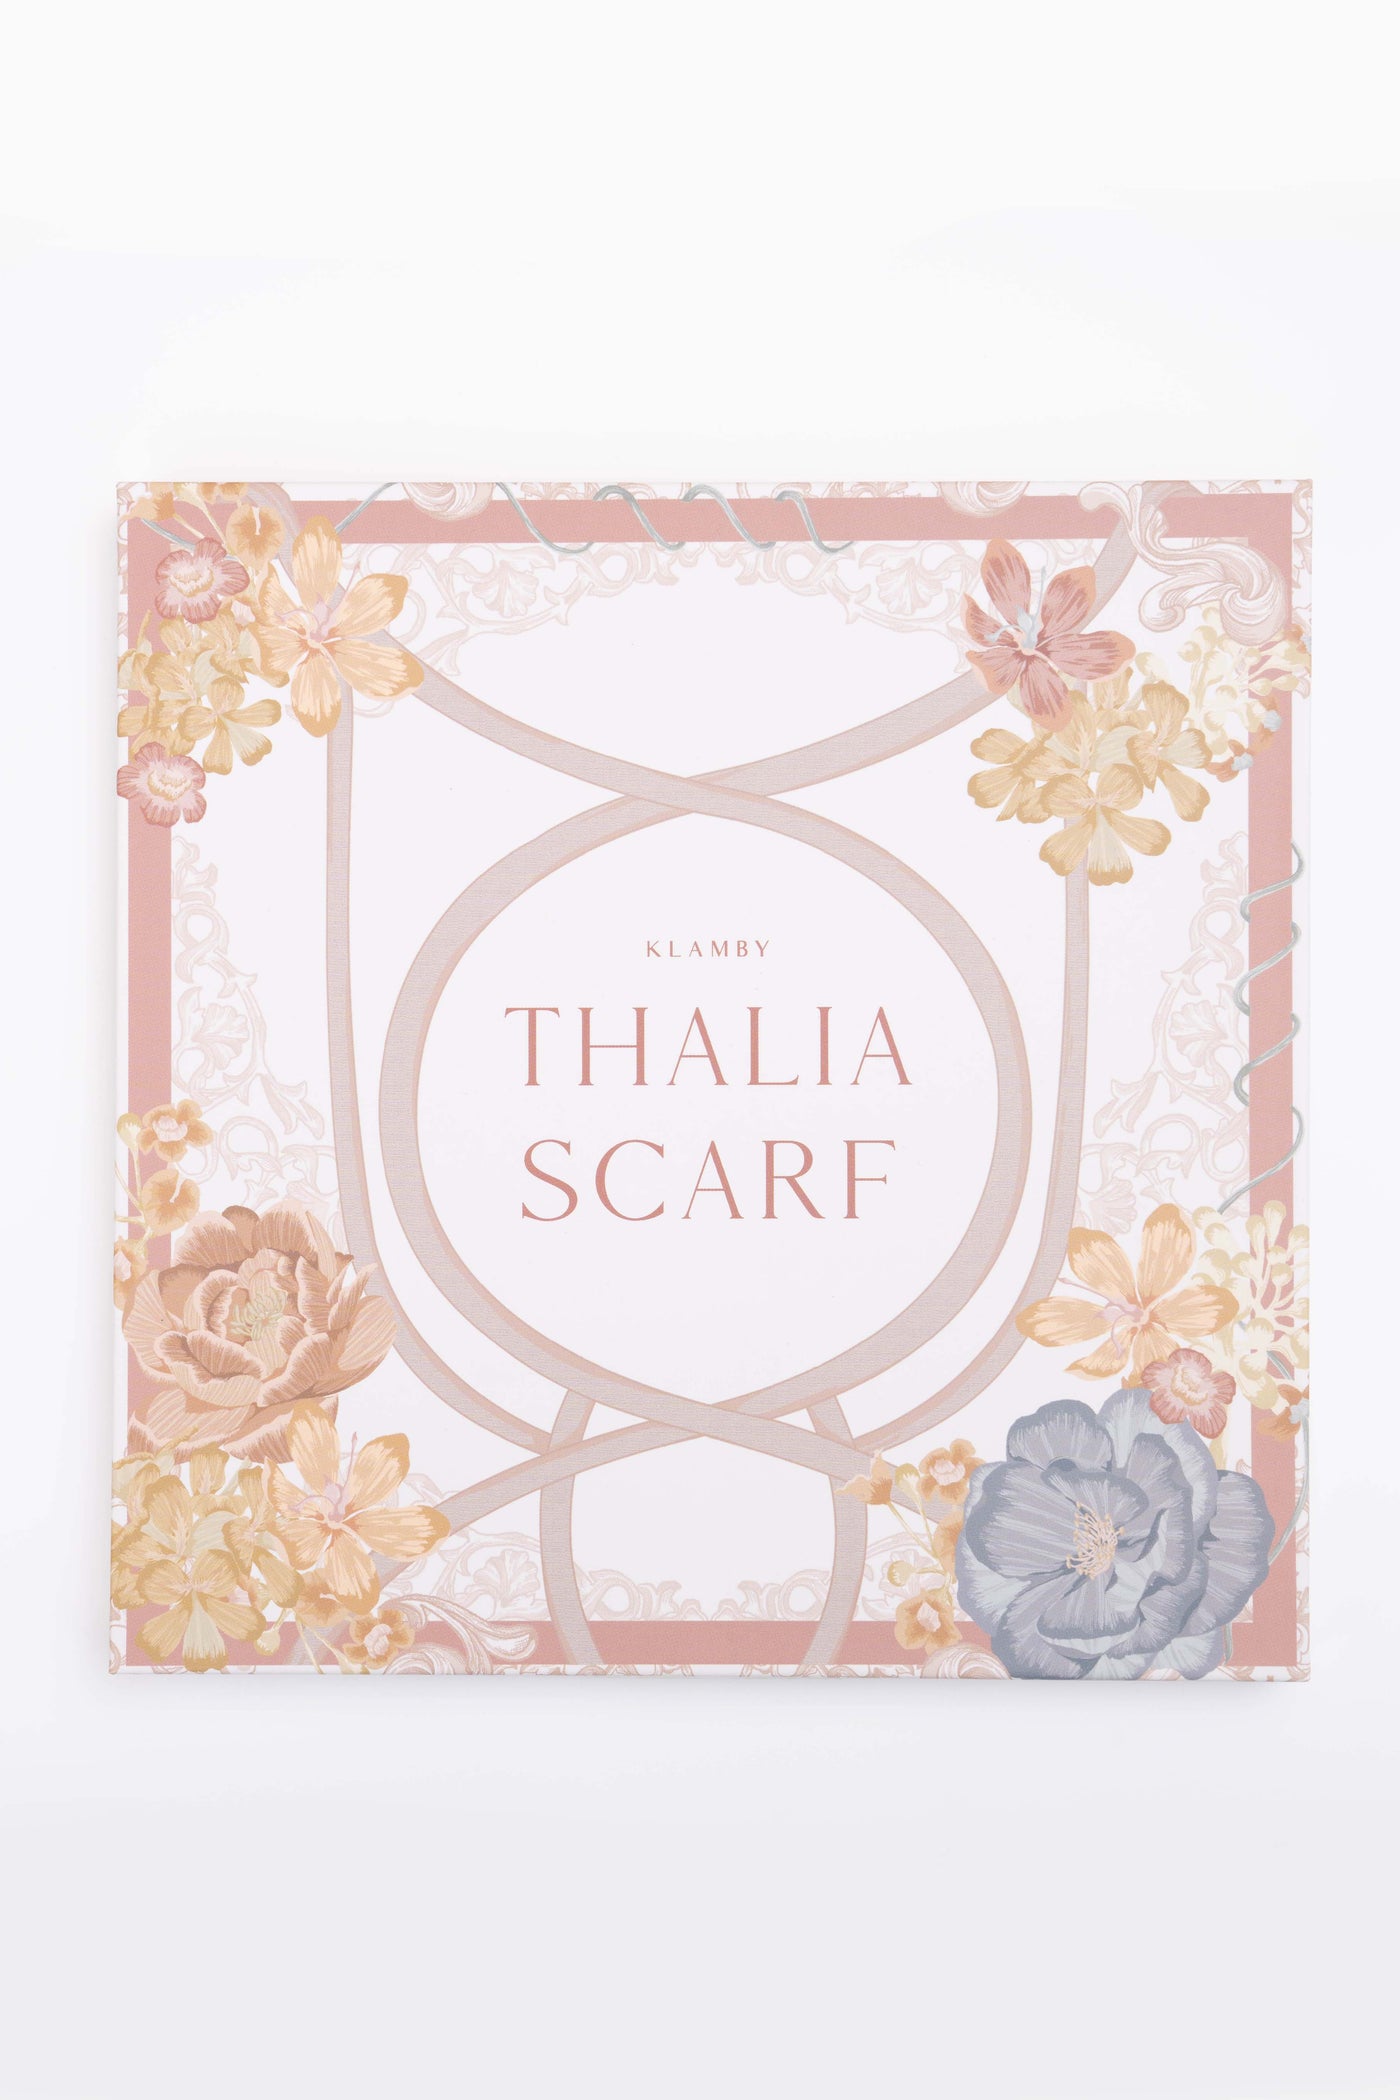 Thalia Scarf Apricot